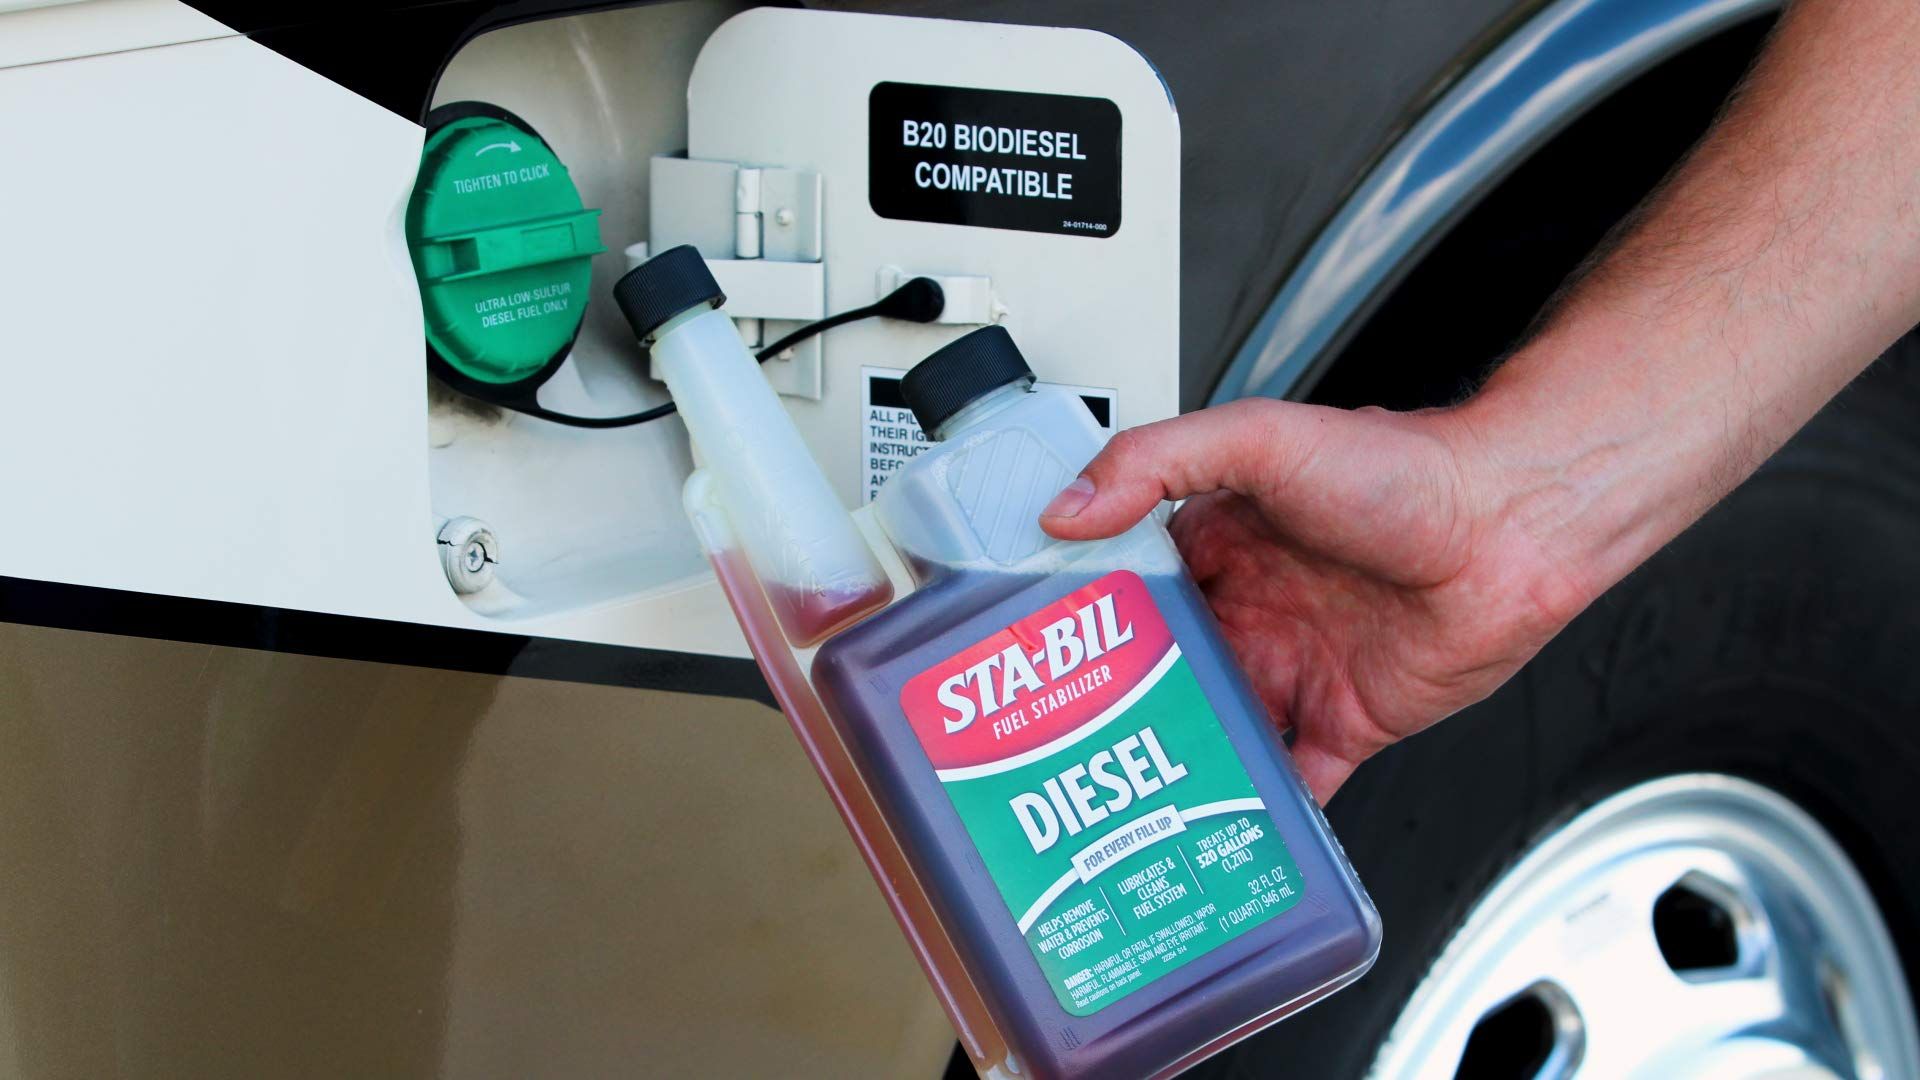  STA-BIL Diesel Fuel Stabilizer - Bôi trơn và làm sạch hệ thống nhiên liệu 